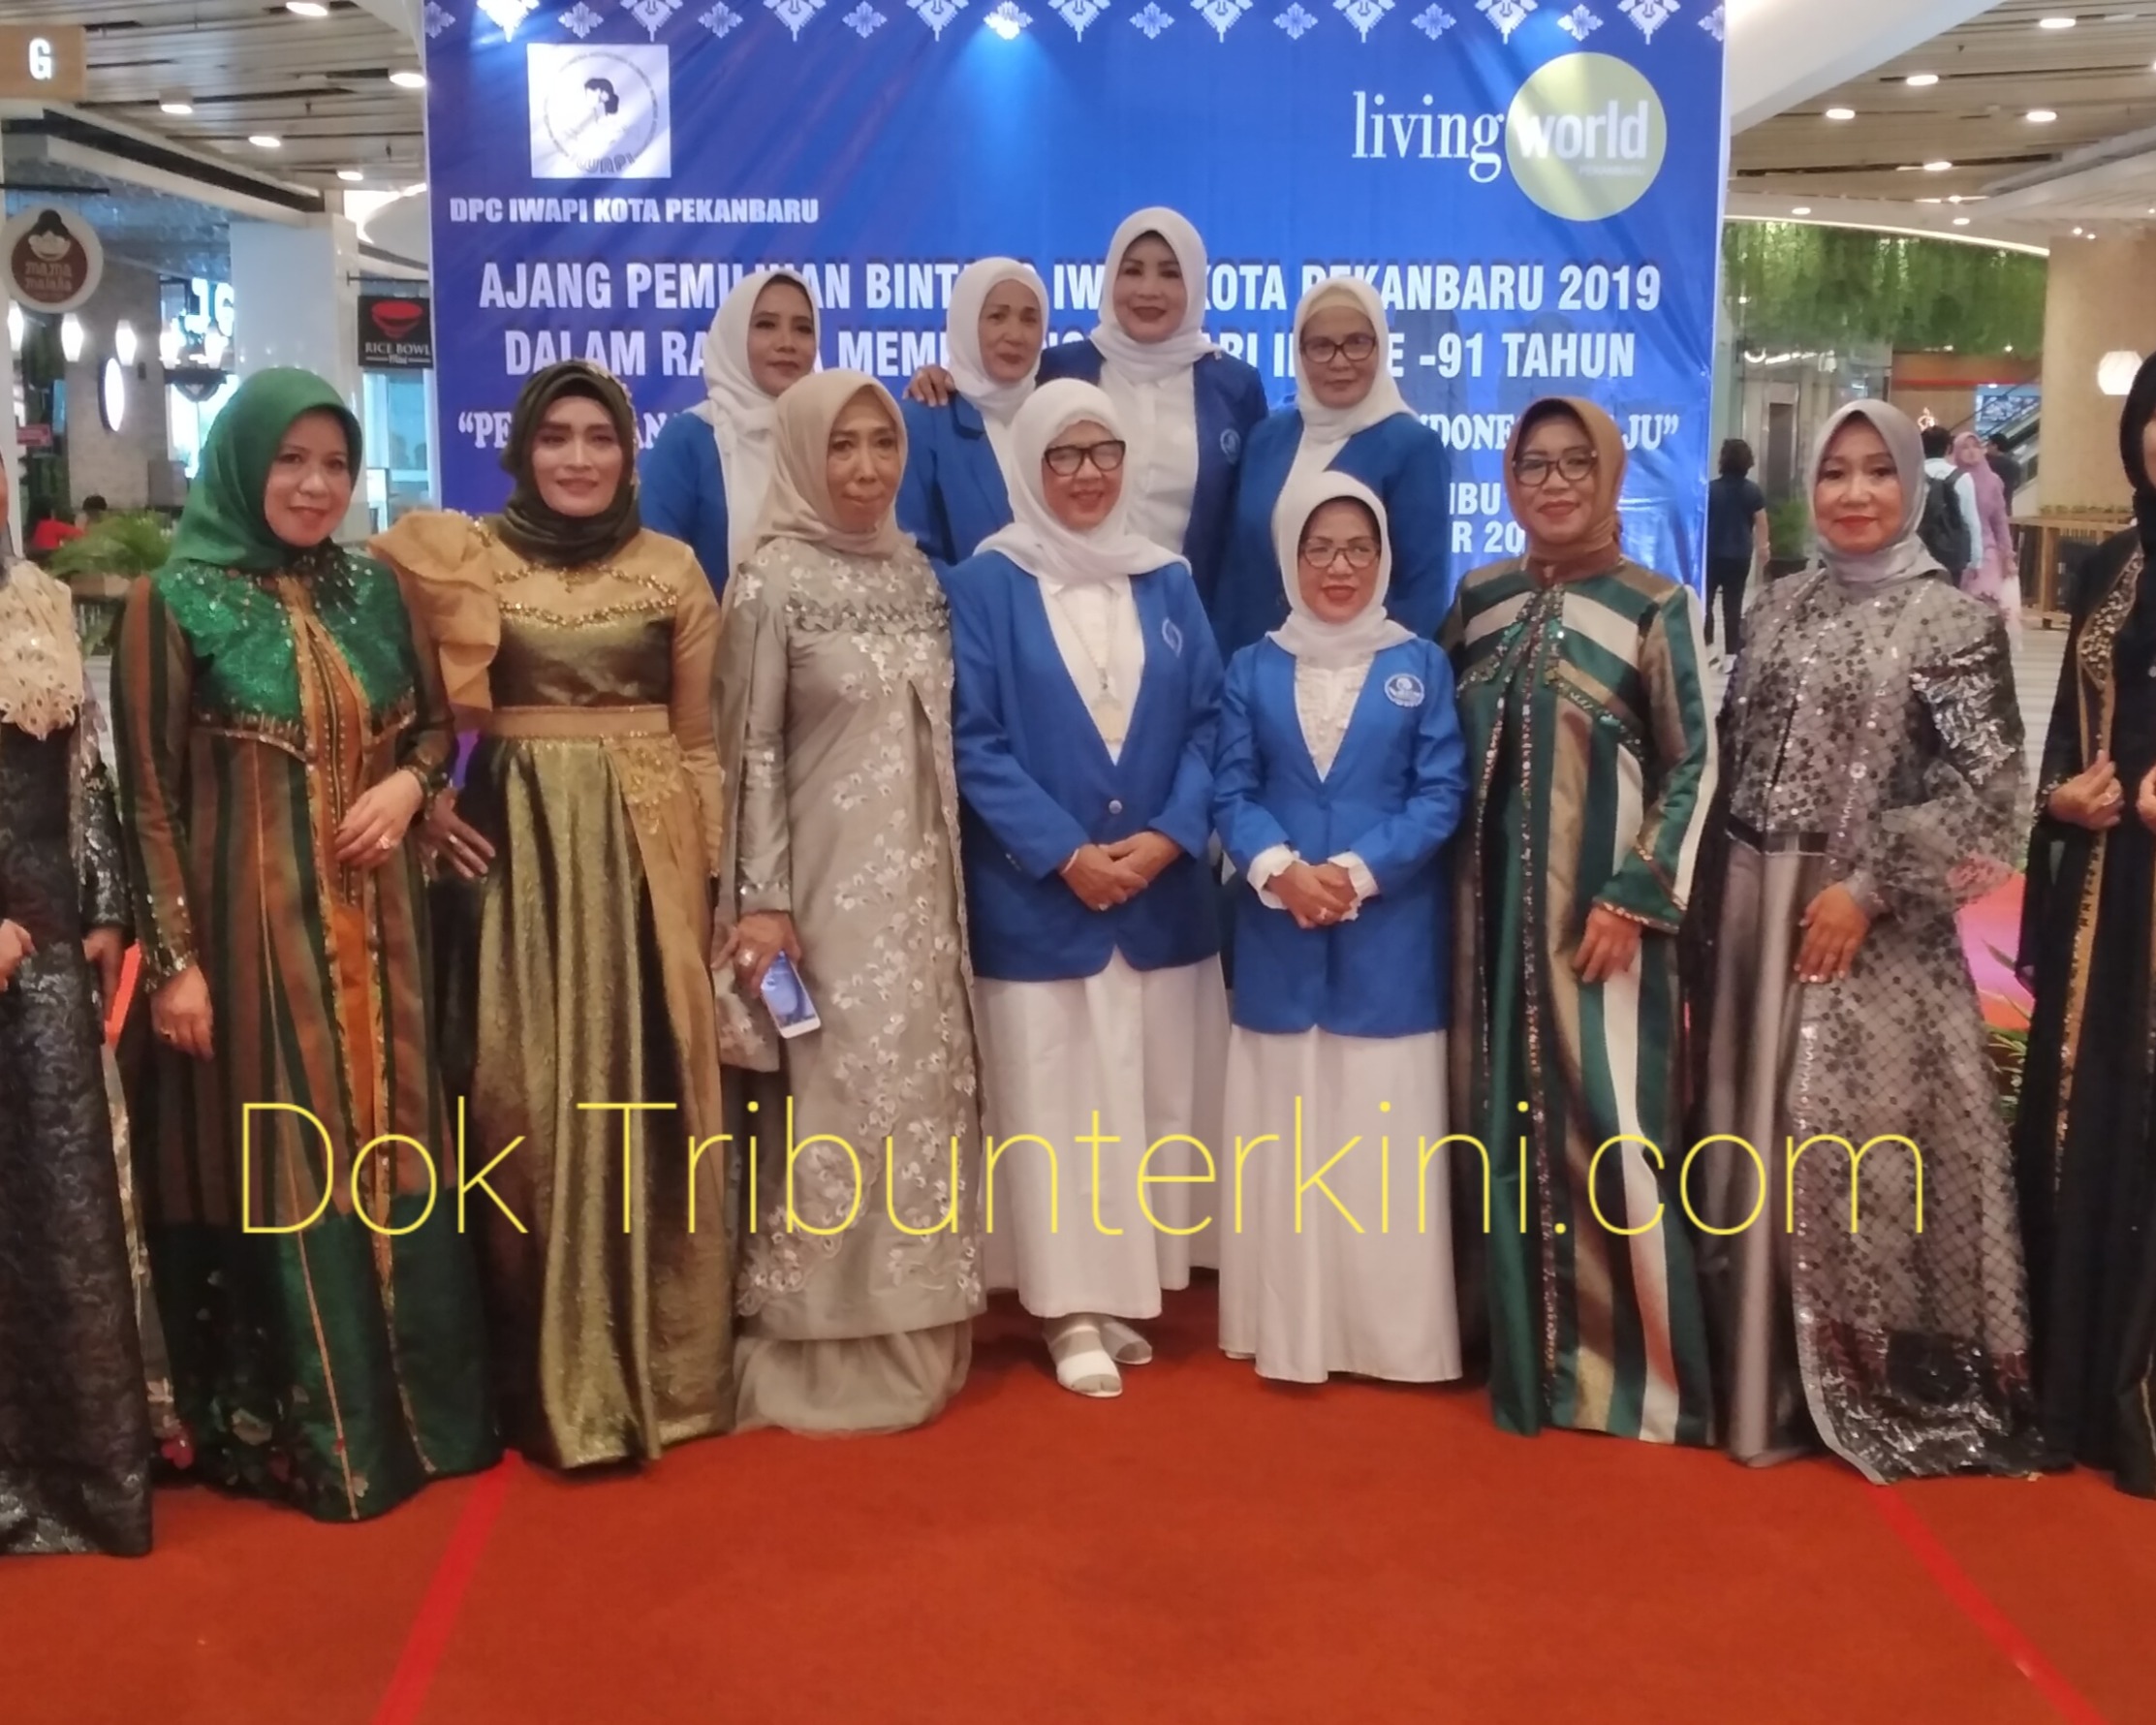 IWAPI DPC Kota Pekanbaru Laksanakan Ajang Pemilihan Bintang IWAPI 2019, Lomba Muslim Fashion dan Lomba Nyanyi, Tema 